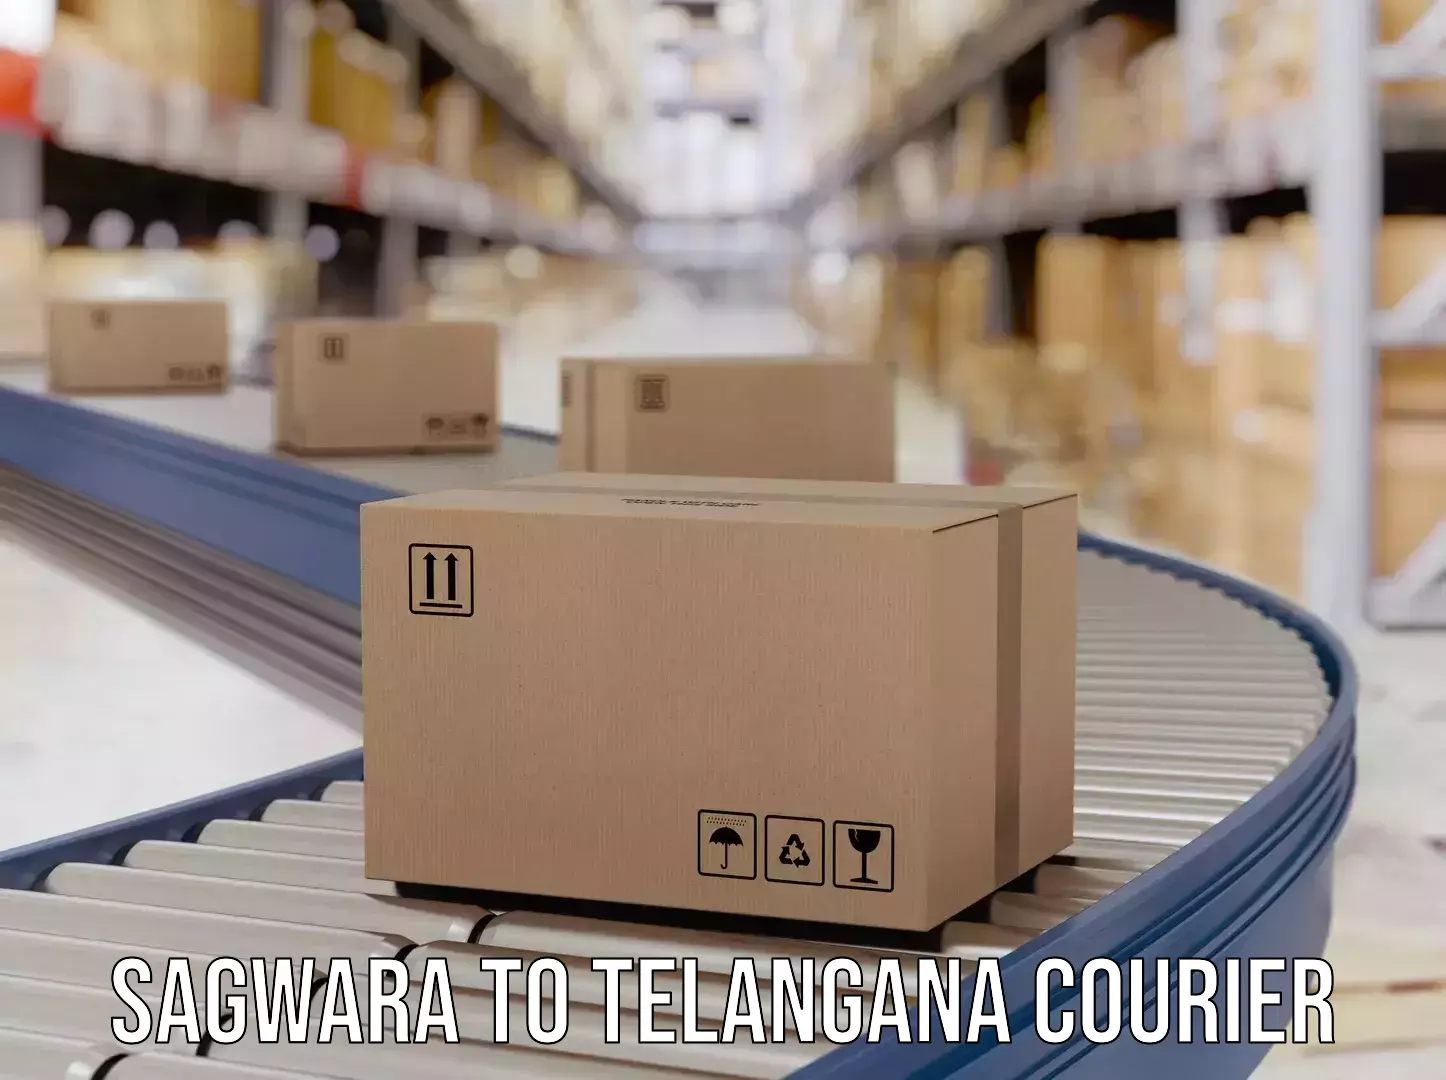 Global parcel delivery Sagwara to Kacheguda